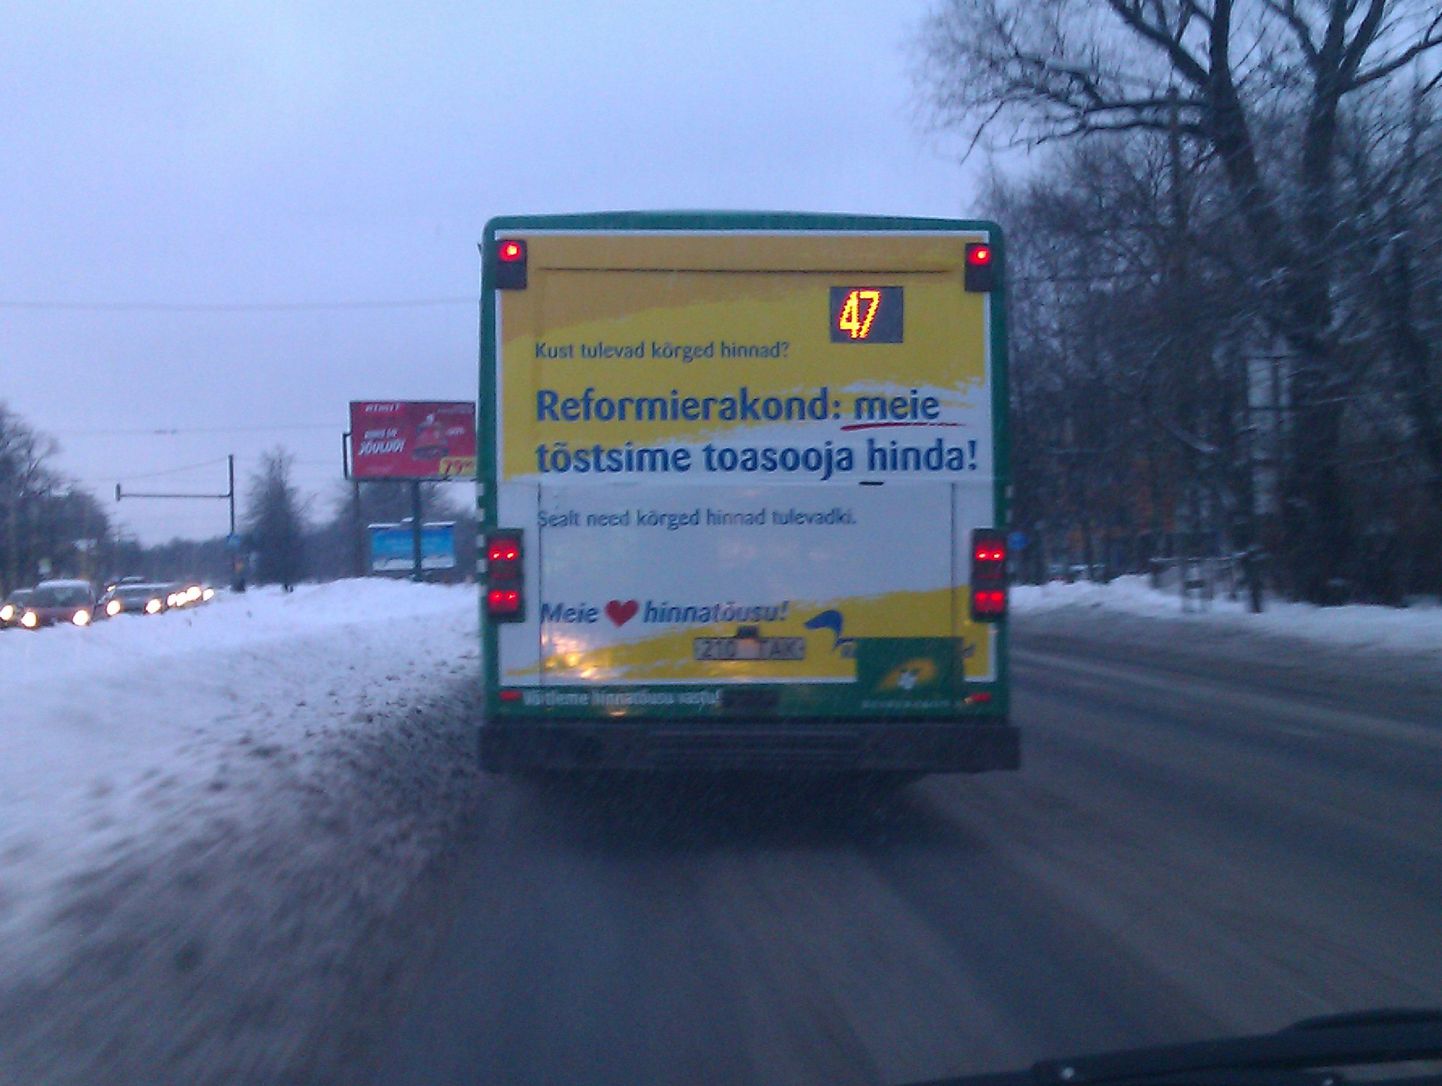 Спорная предвыборная реклама на городском автобусе.